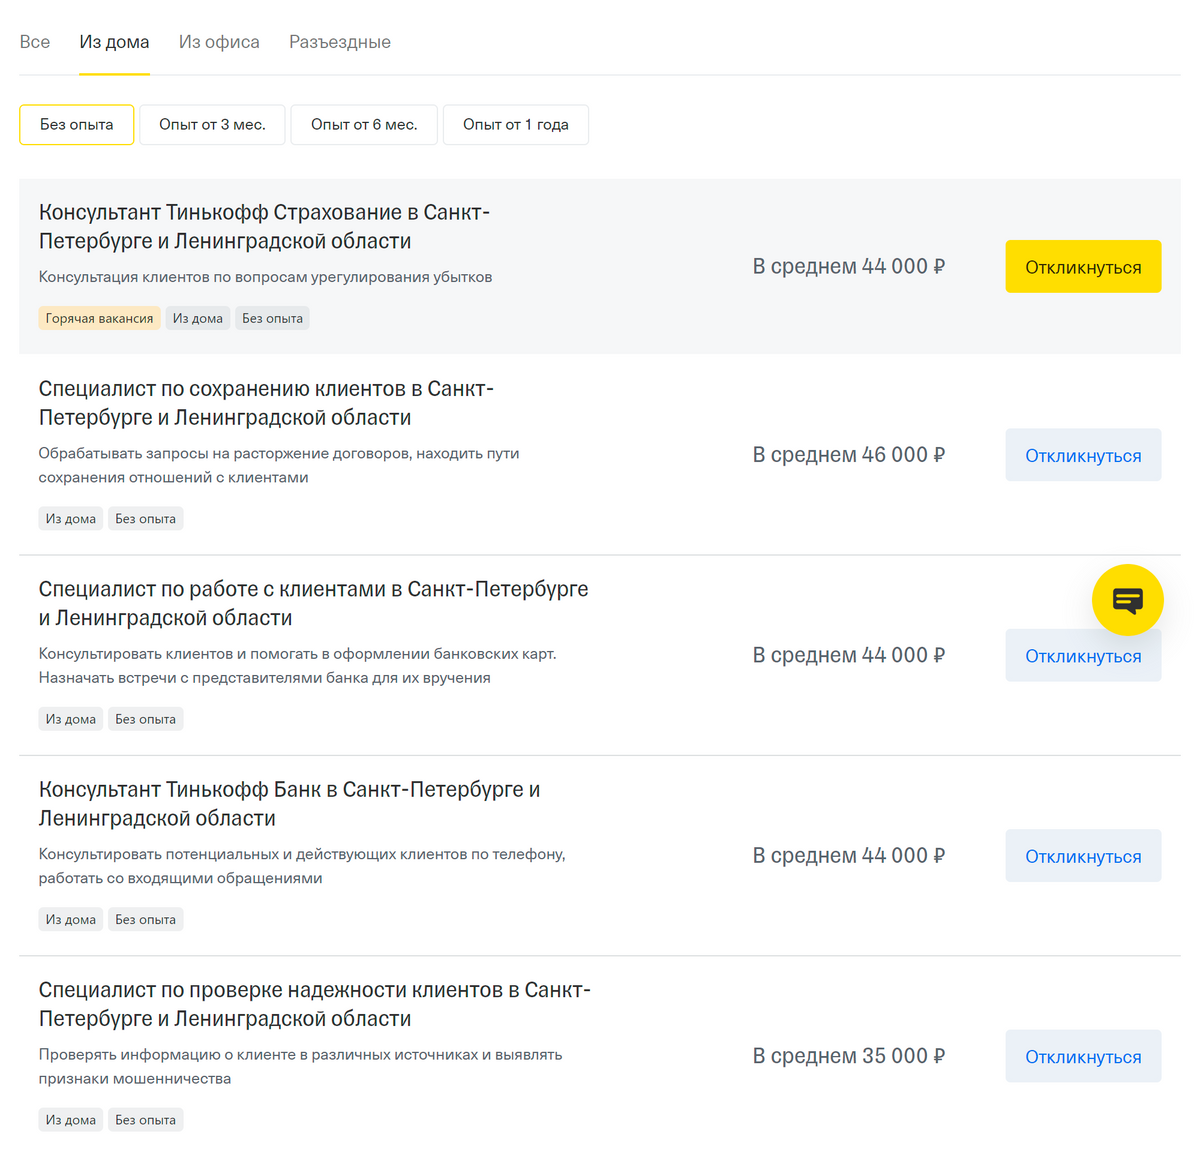 На сайте rabota.tinkoff.ru можно найти удаленную вакансию по&nbsp;фильтрам «из&nbsp;дома» и «без&nbsp;опыта»: перед началом работы сотрудники пройдут короткое онлайн-обучение